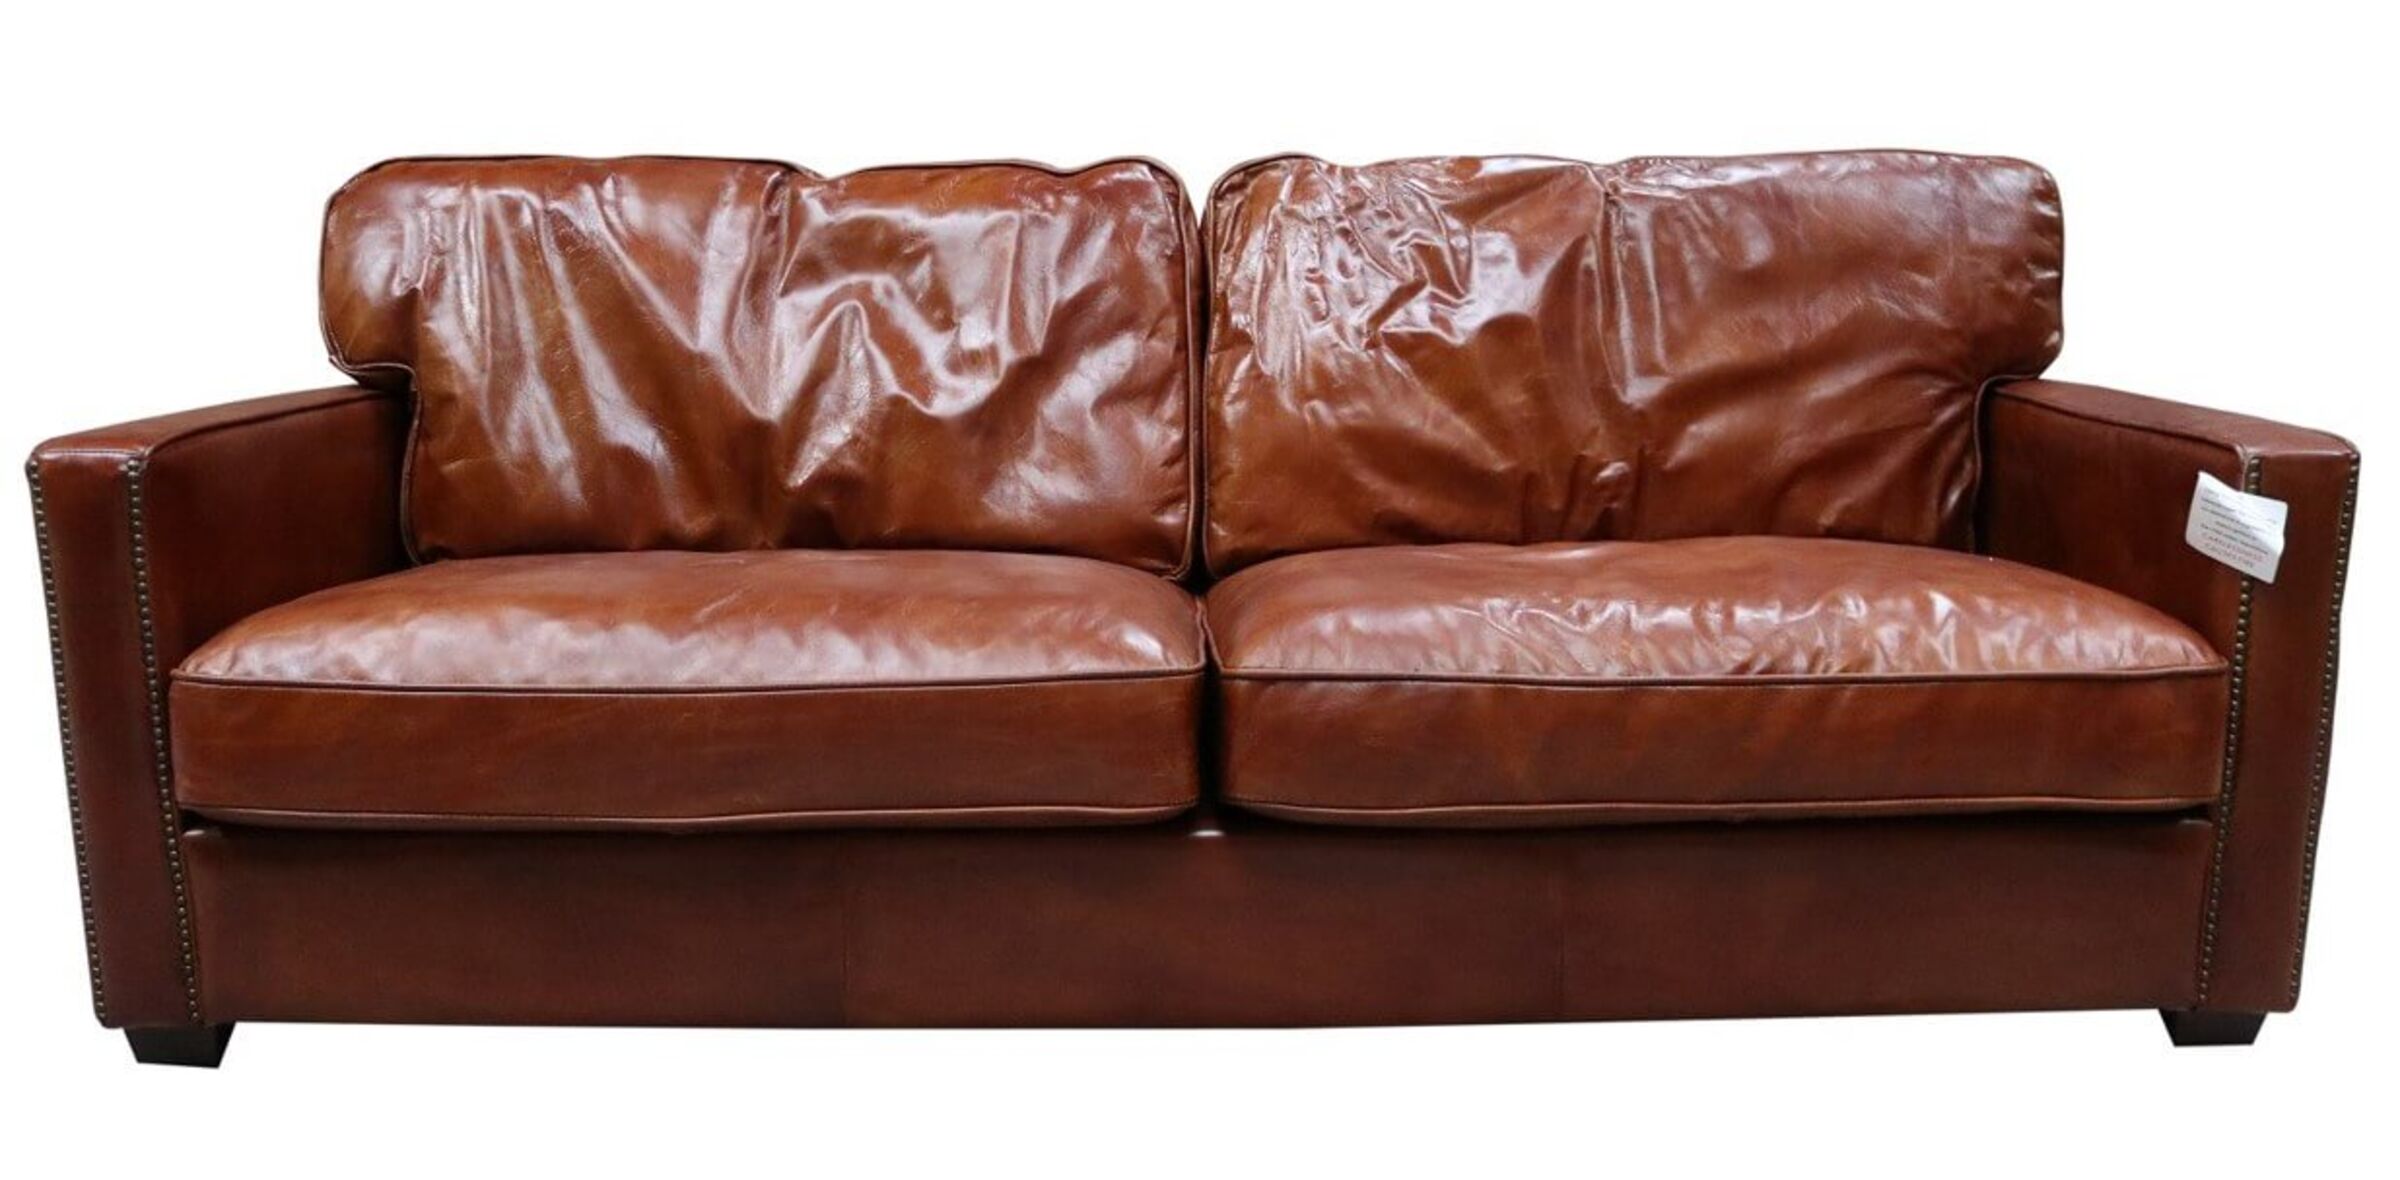 retro tan leather sofa